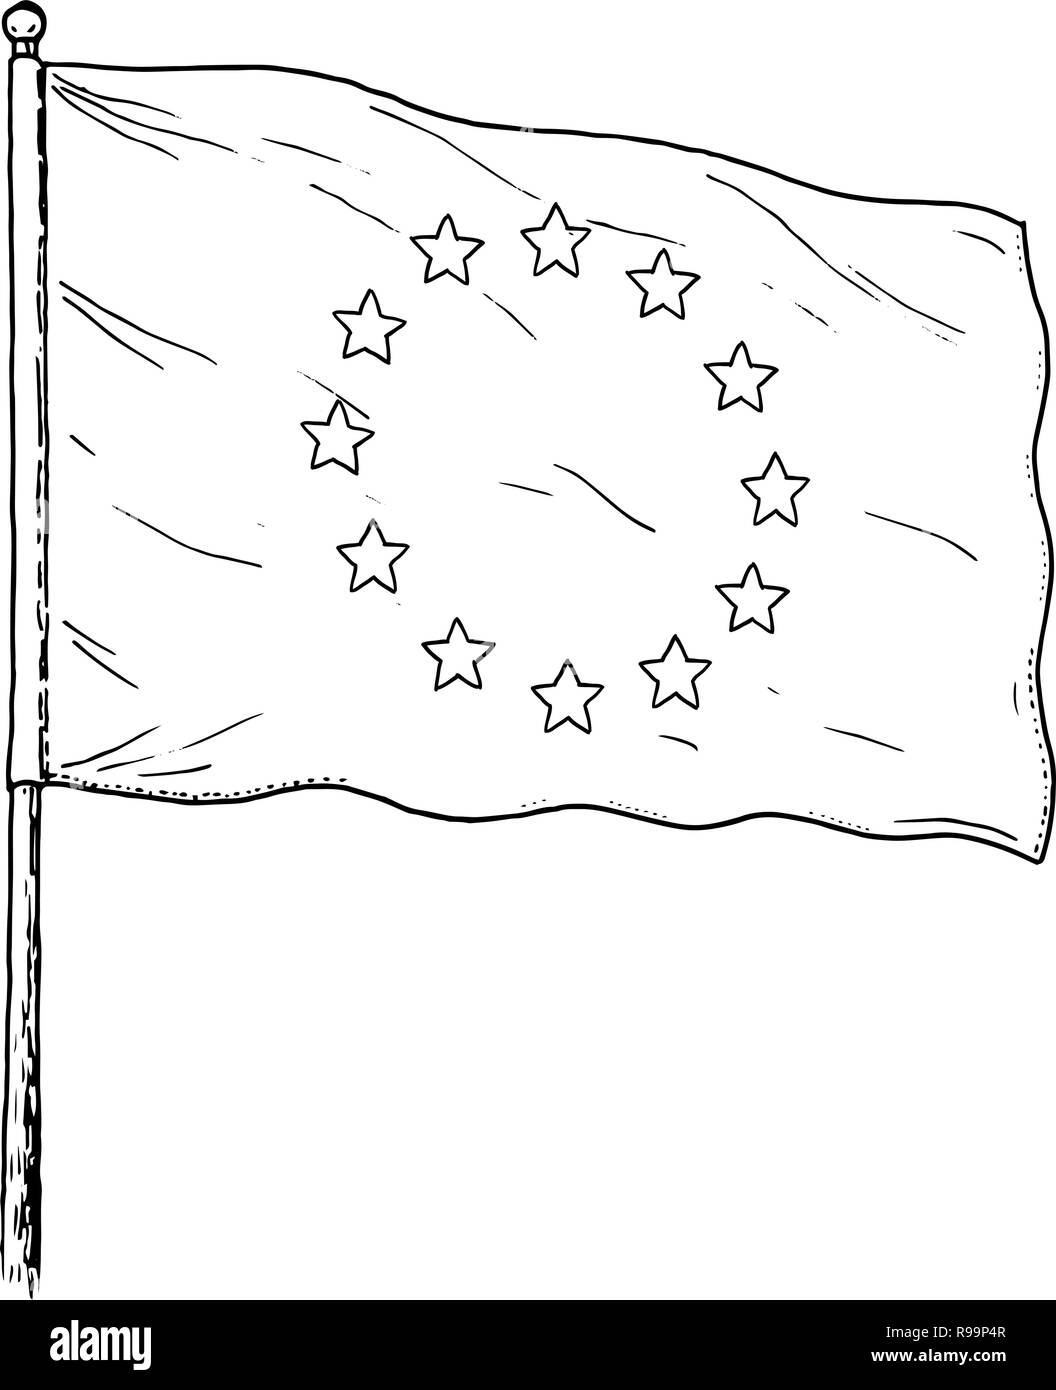 Drapeau de l'Union européenne - dessin vintage comme illustration du pavillon de l'UE. Bannière monochromatique contour sur fond blanc. Illustration de Vecteur